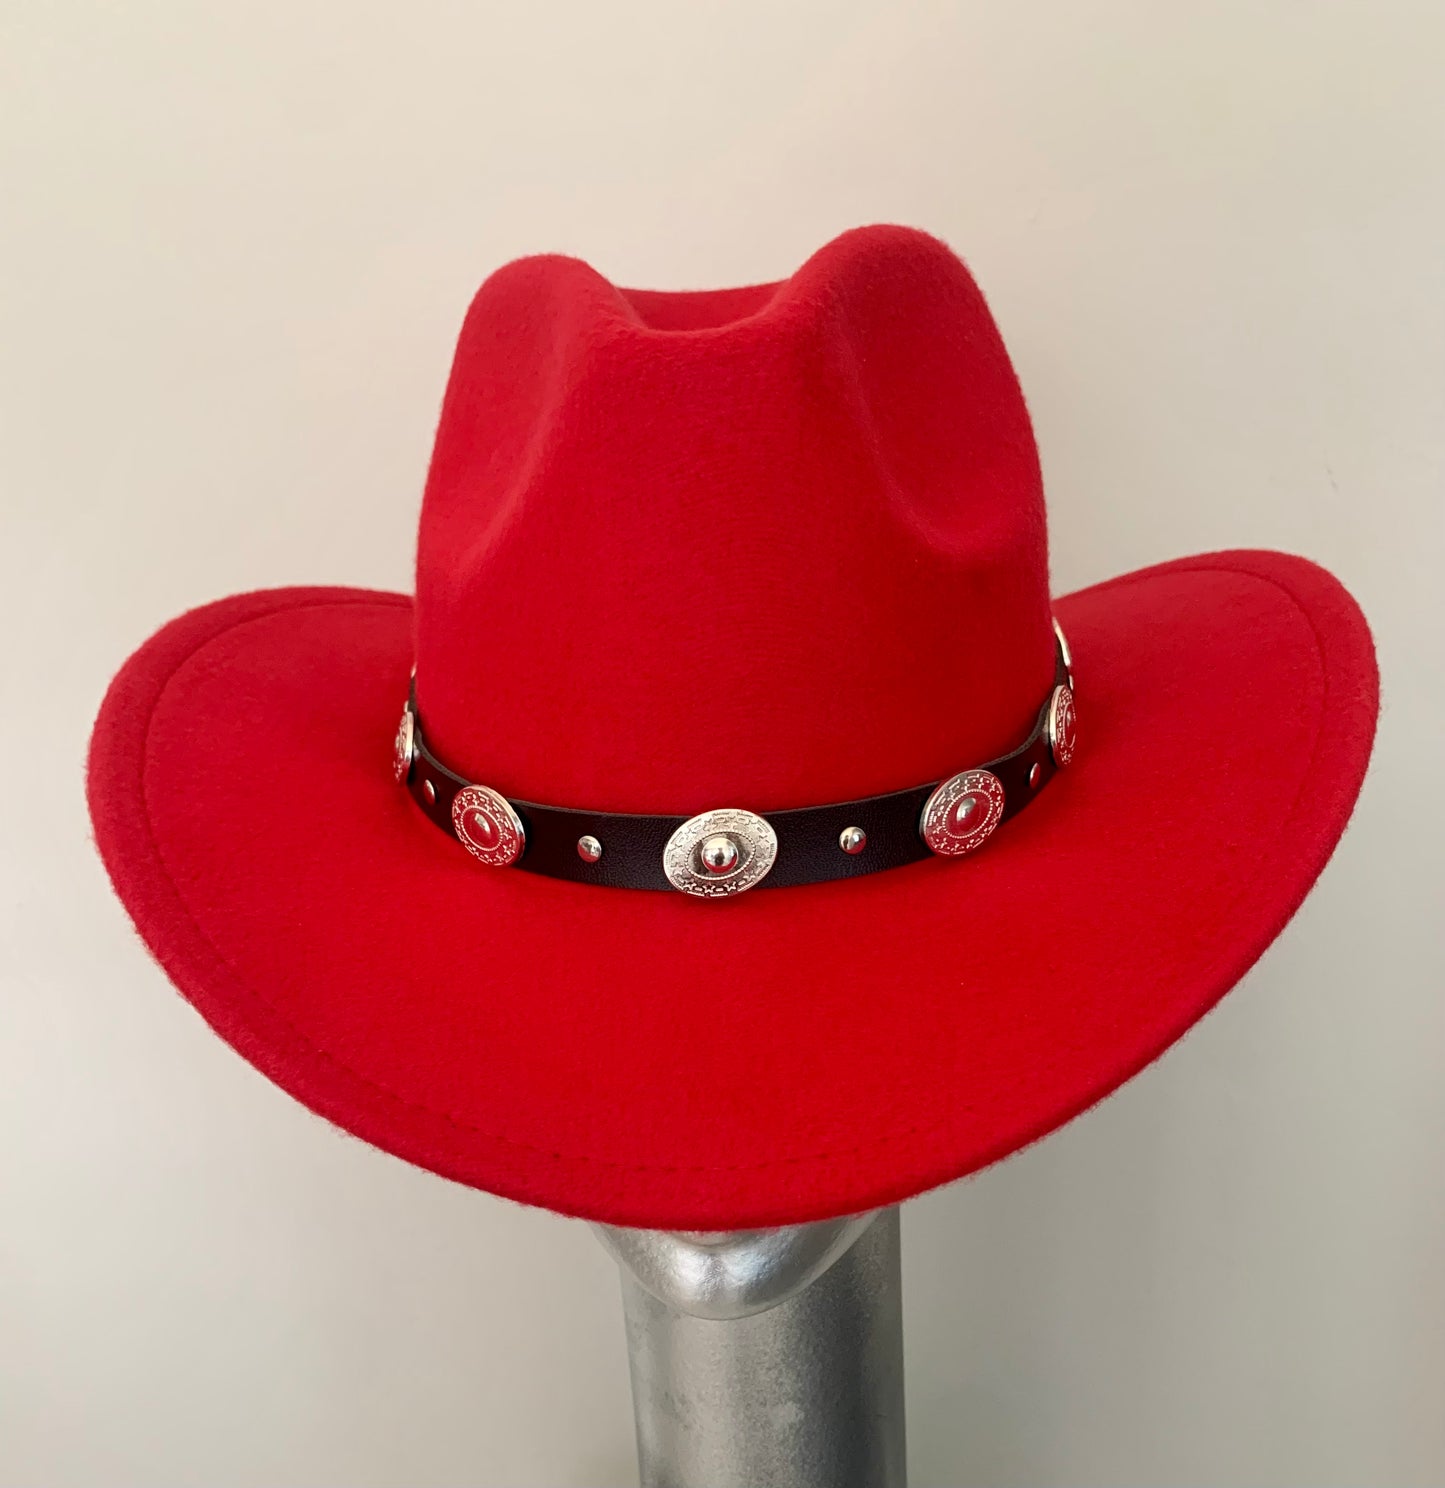 Cowboy hat red